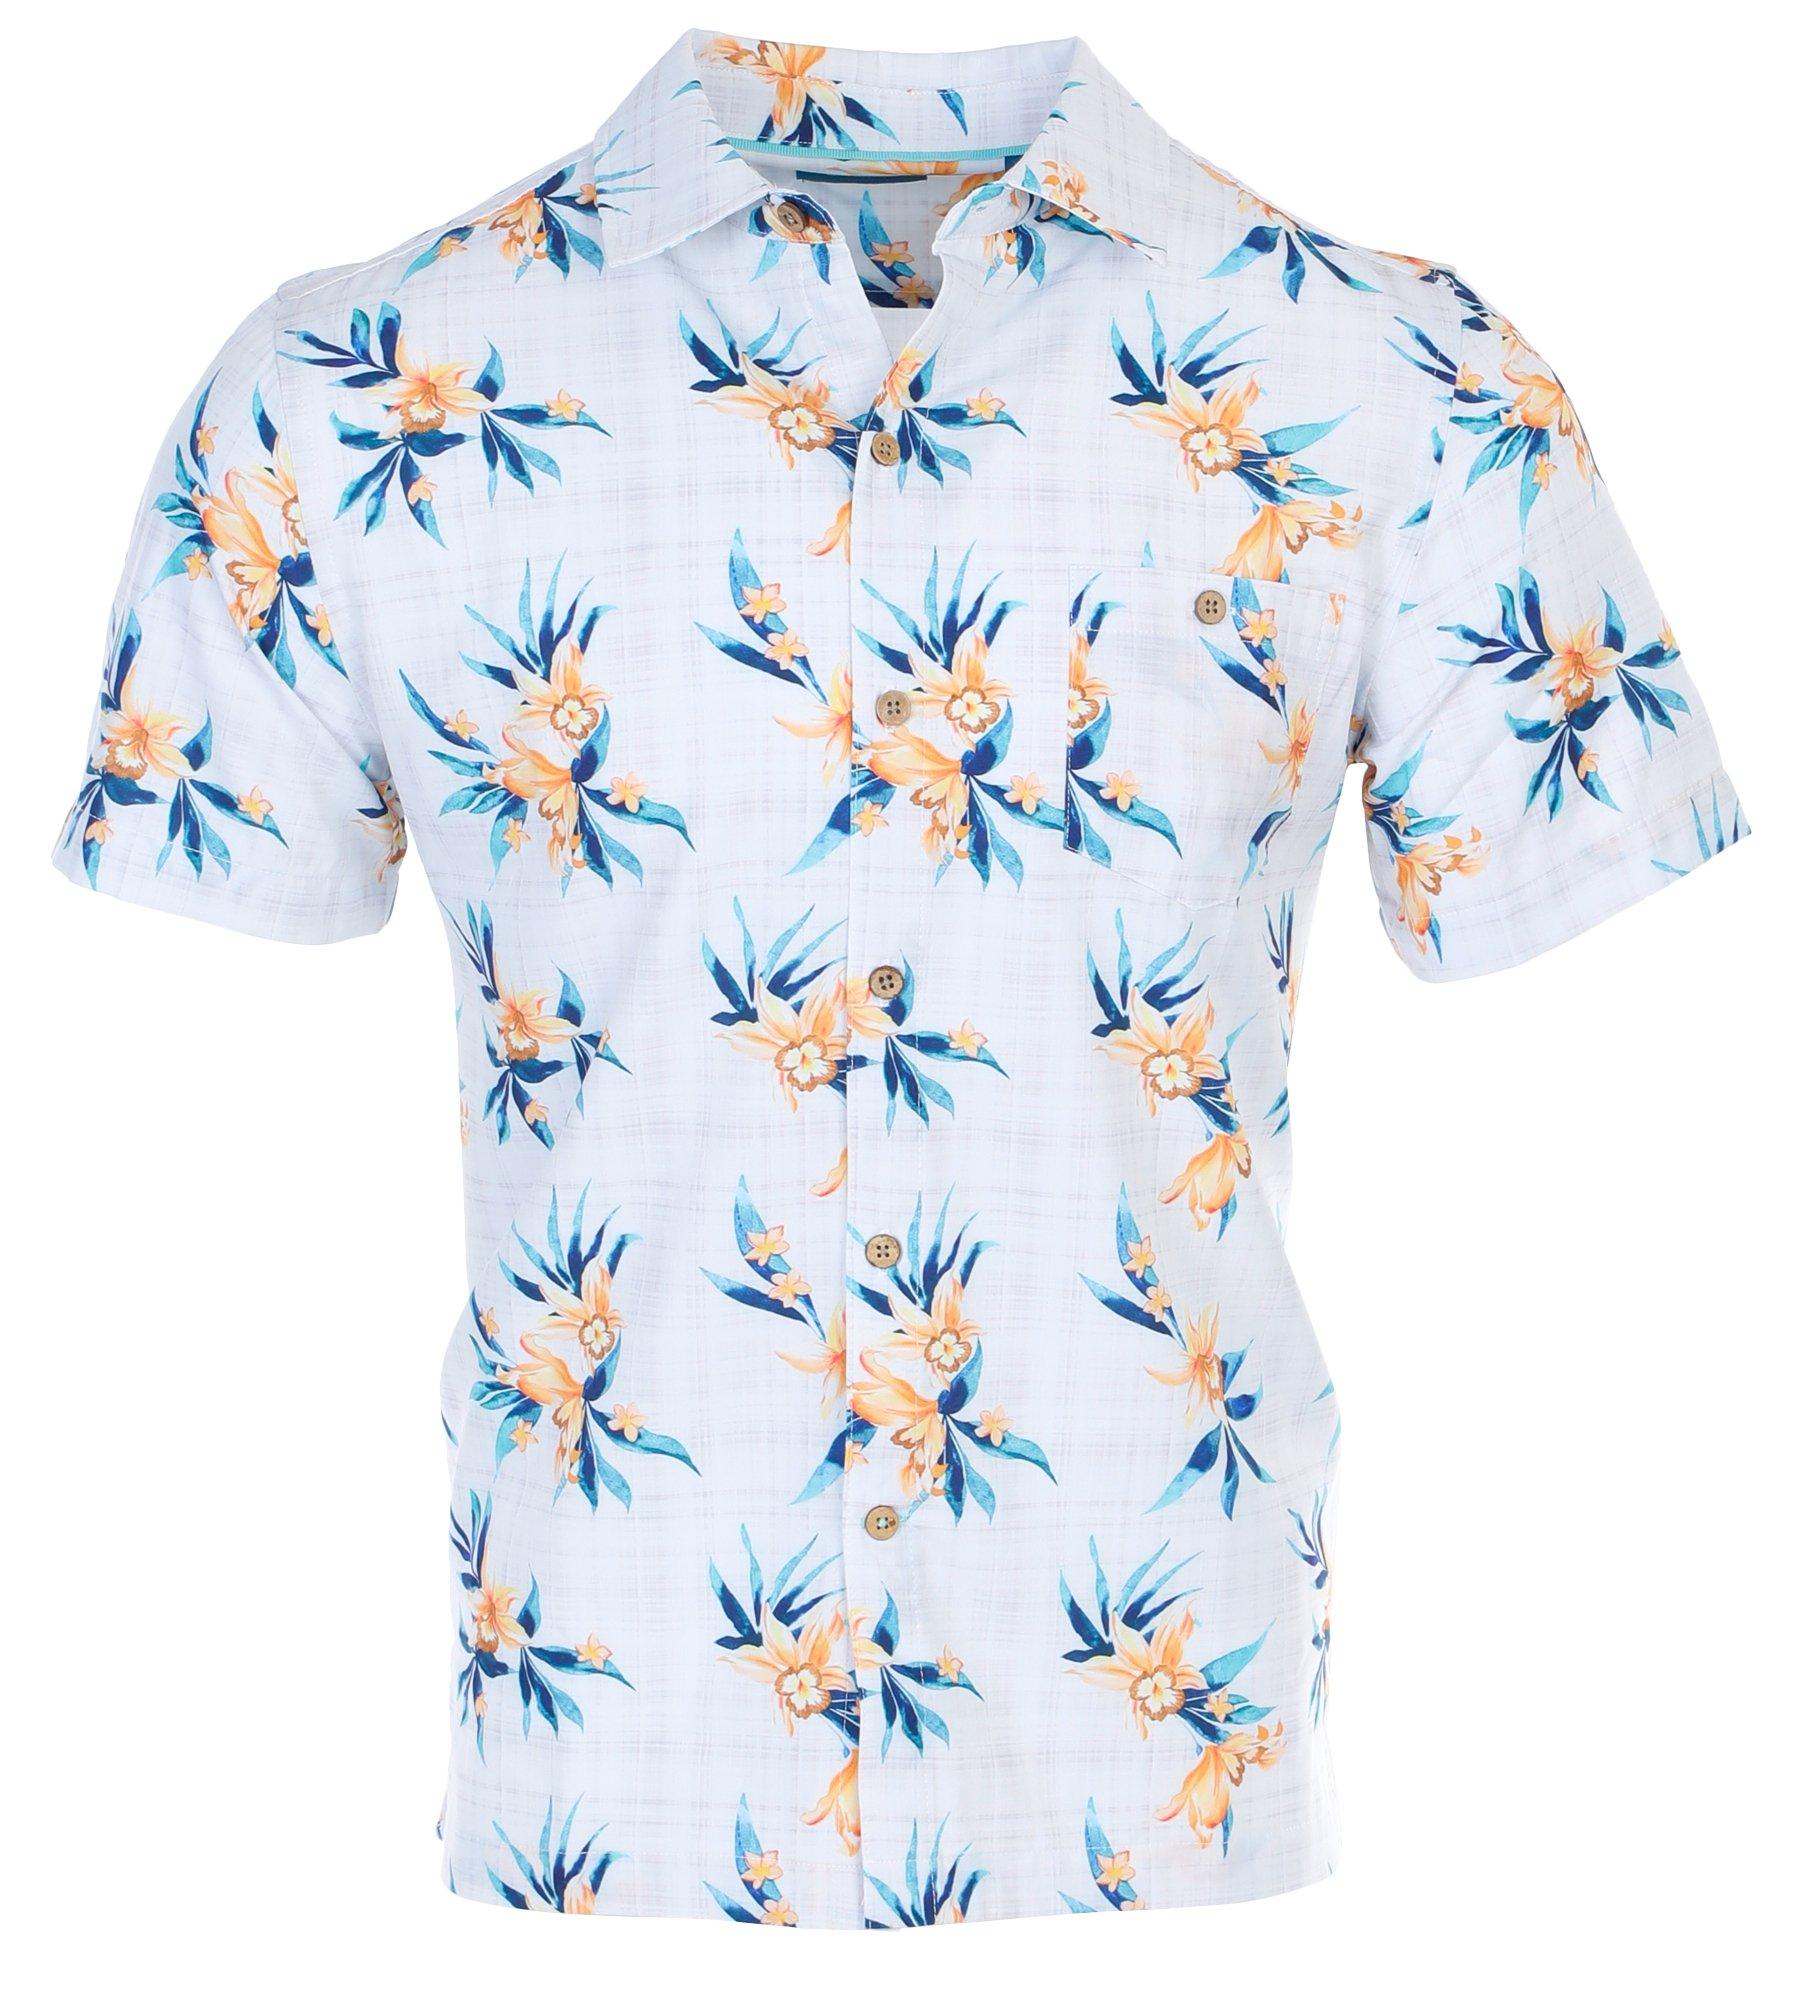 Men's Tropical Flower Button Down Shirt